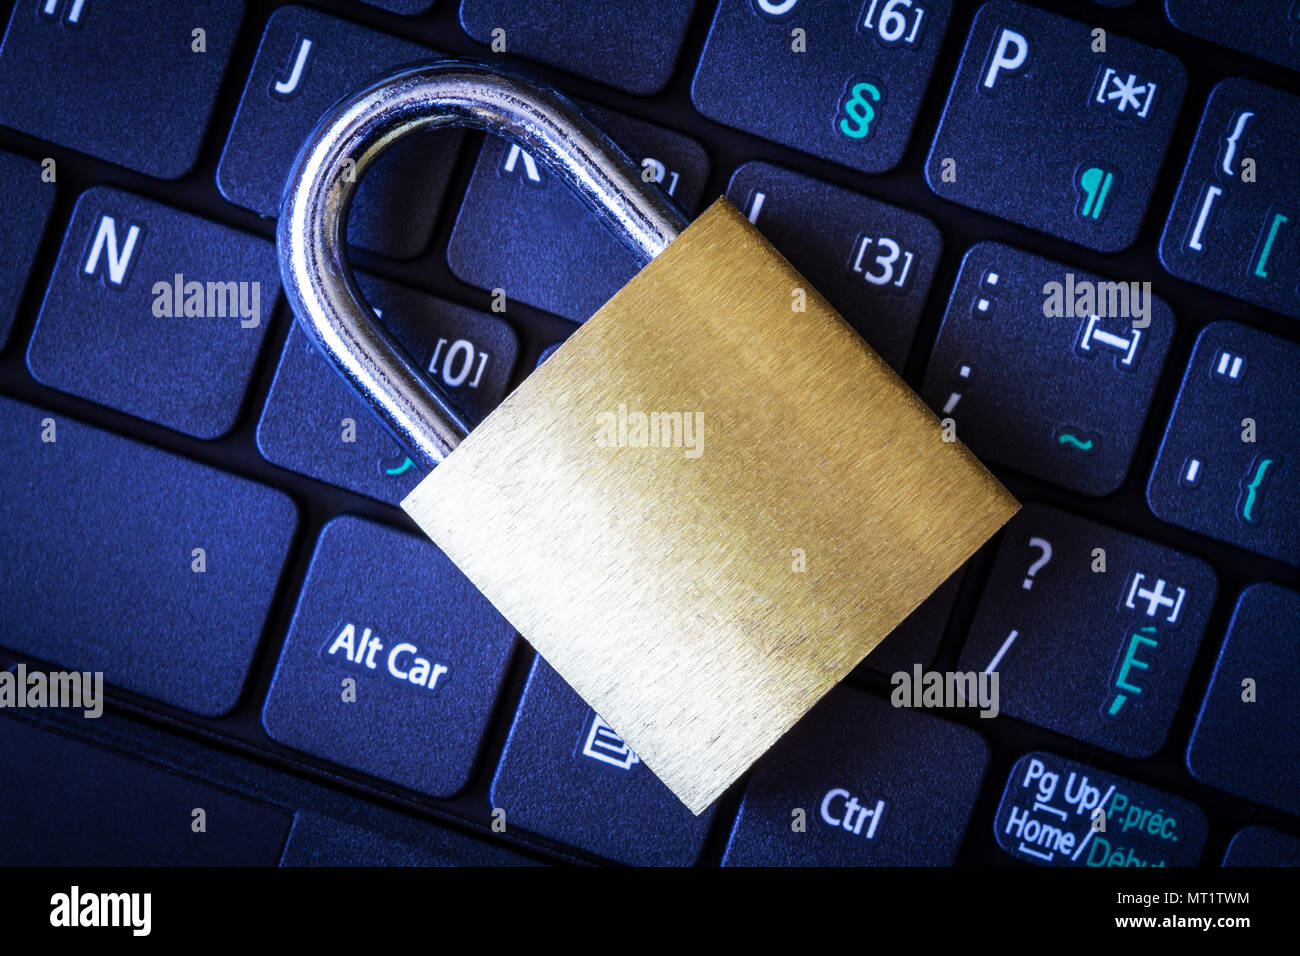 Goldene Vorhängeschloss auf dem Computer Laptop Tastatur. Konzept der Internet Security, Datenschutz, Computerkriminalität Verhinderung. Stockfoto